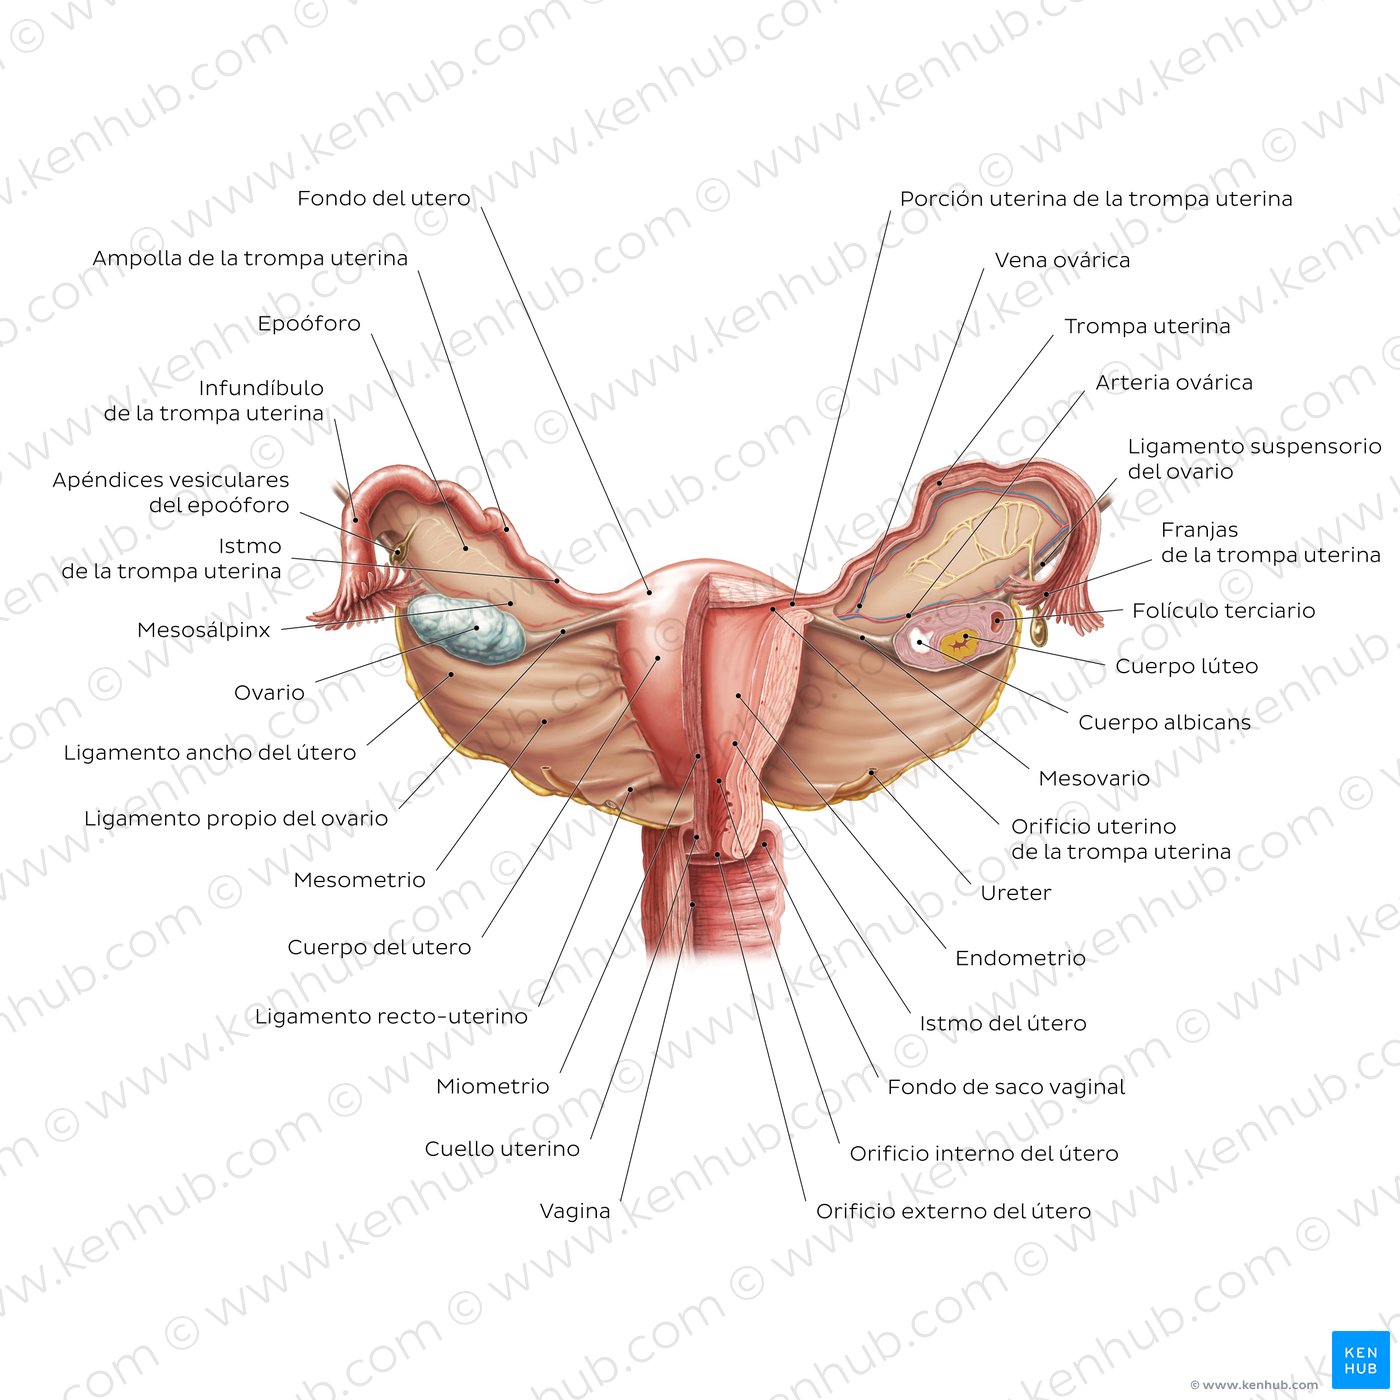 Ovarios: Anatomía y embriología | Kenhub